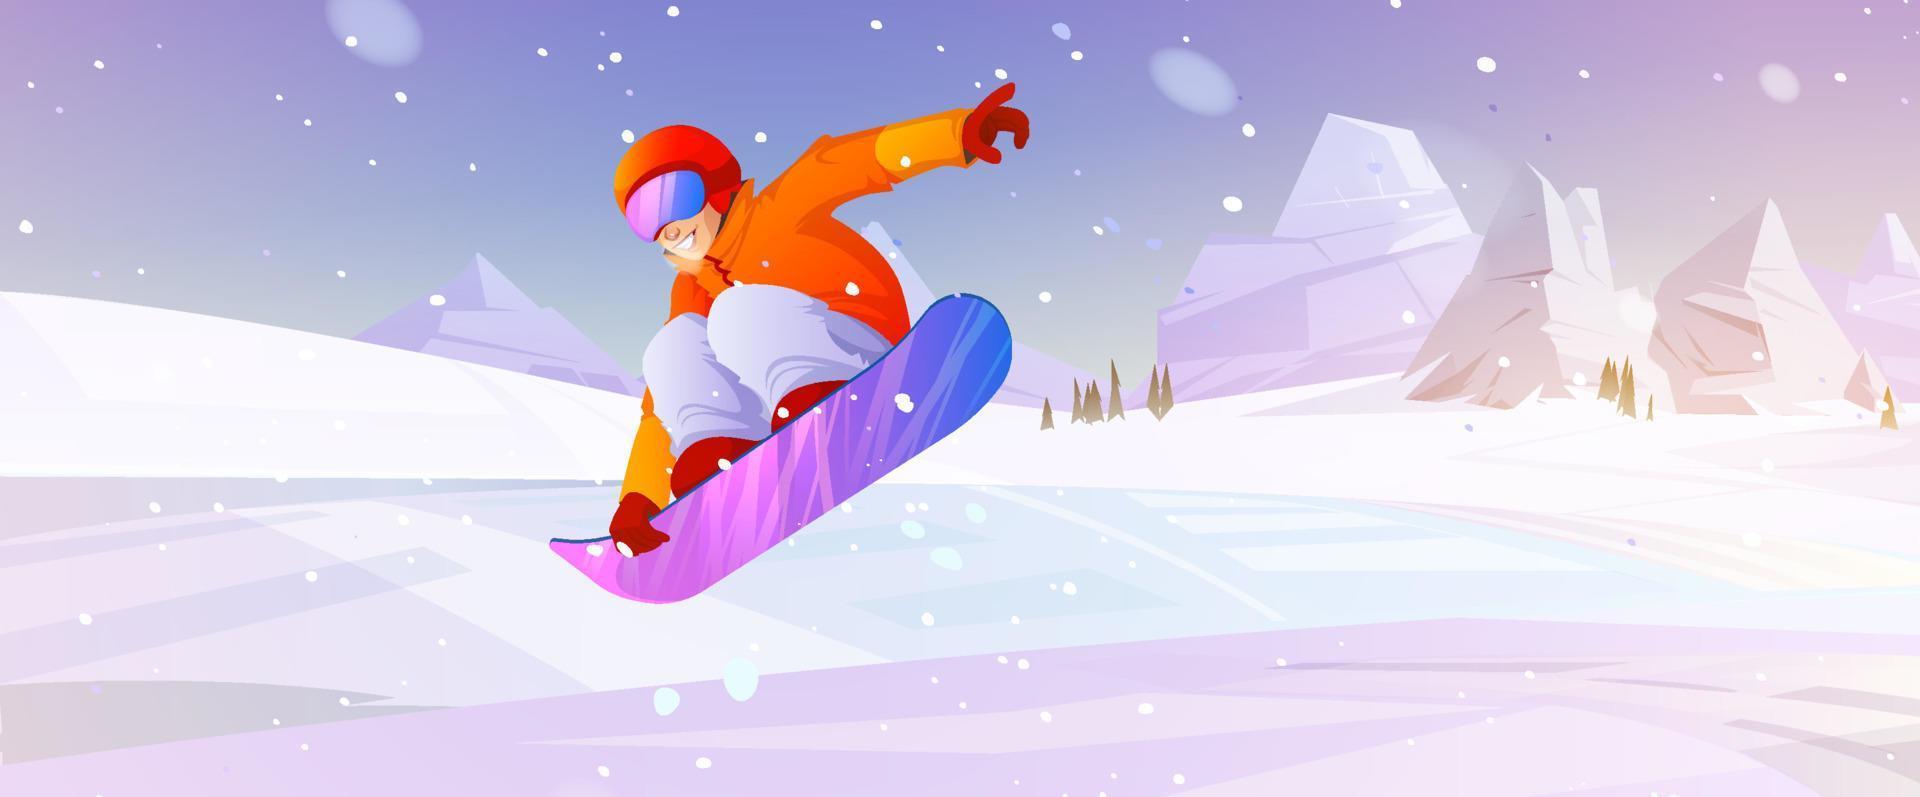 extreme snowboarding wintersport outdoor-aktivität vektor